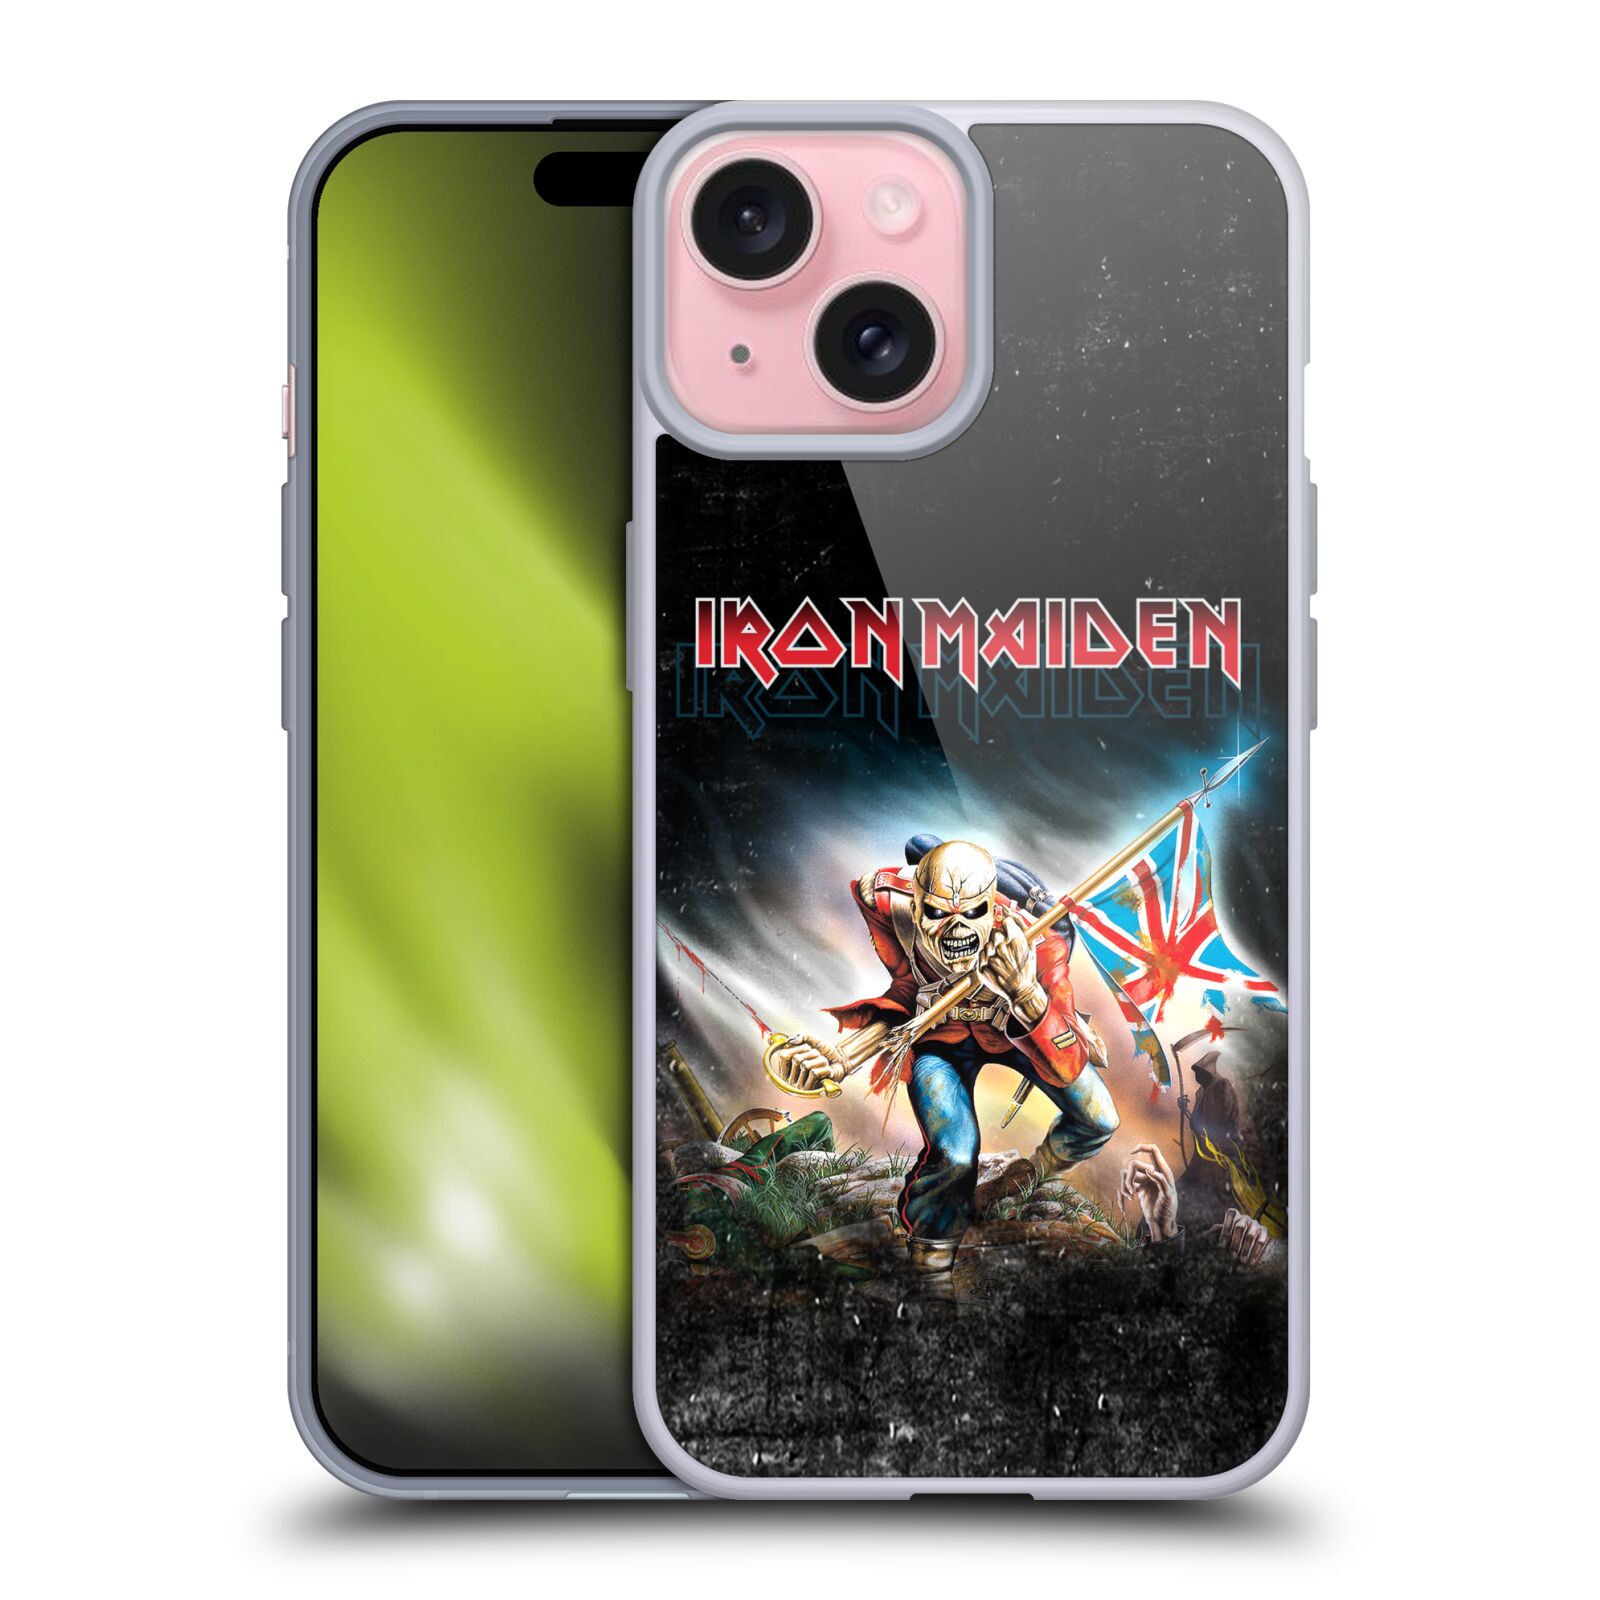 Silikonové lesklé pouzdro na mobil Apple iPhone 15 - Head Case - Iron Maiden - Trooper 2016 (Silikonový lesklý kryt, obal, pouzdro na mobilní telefon Apple iPhone 15 s motivem Iron Maiden - Trooper 2016)